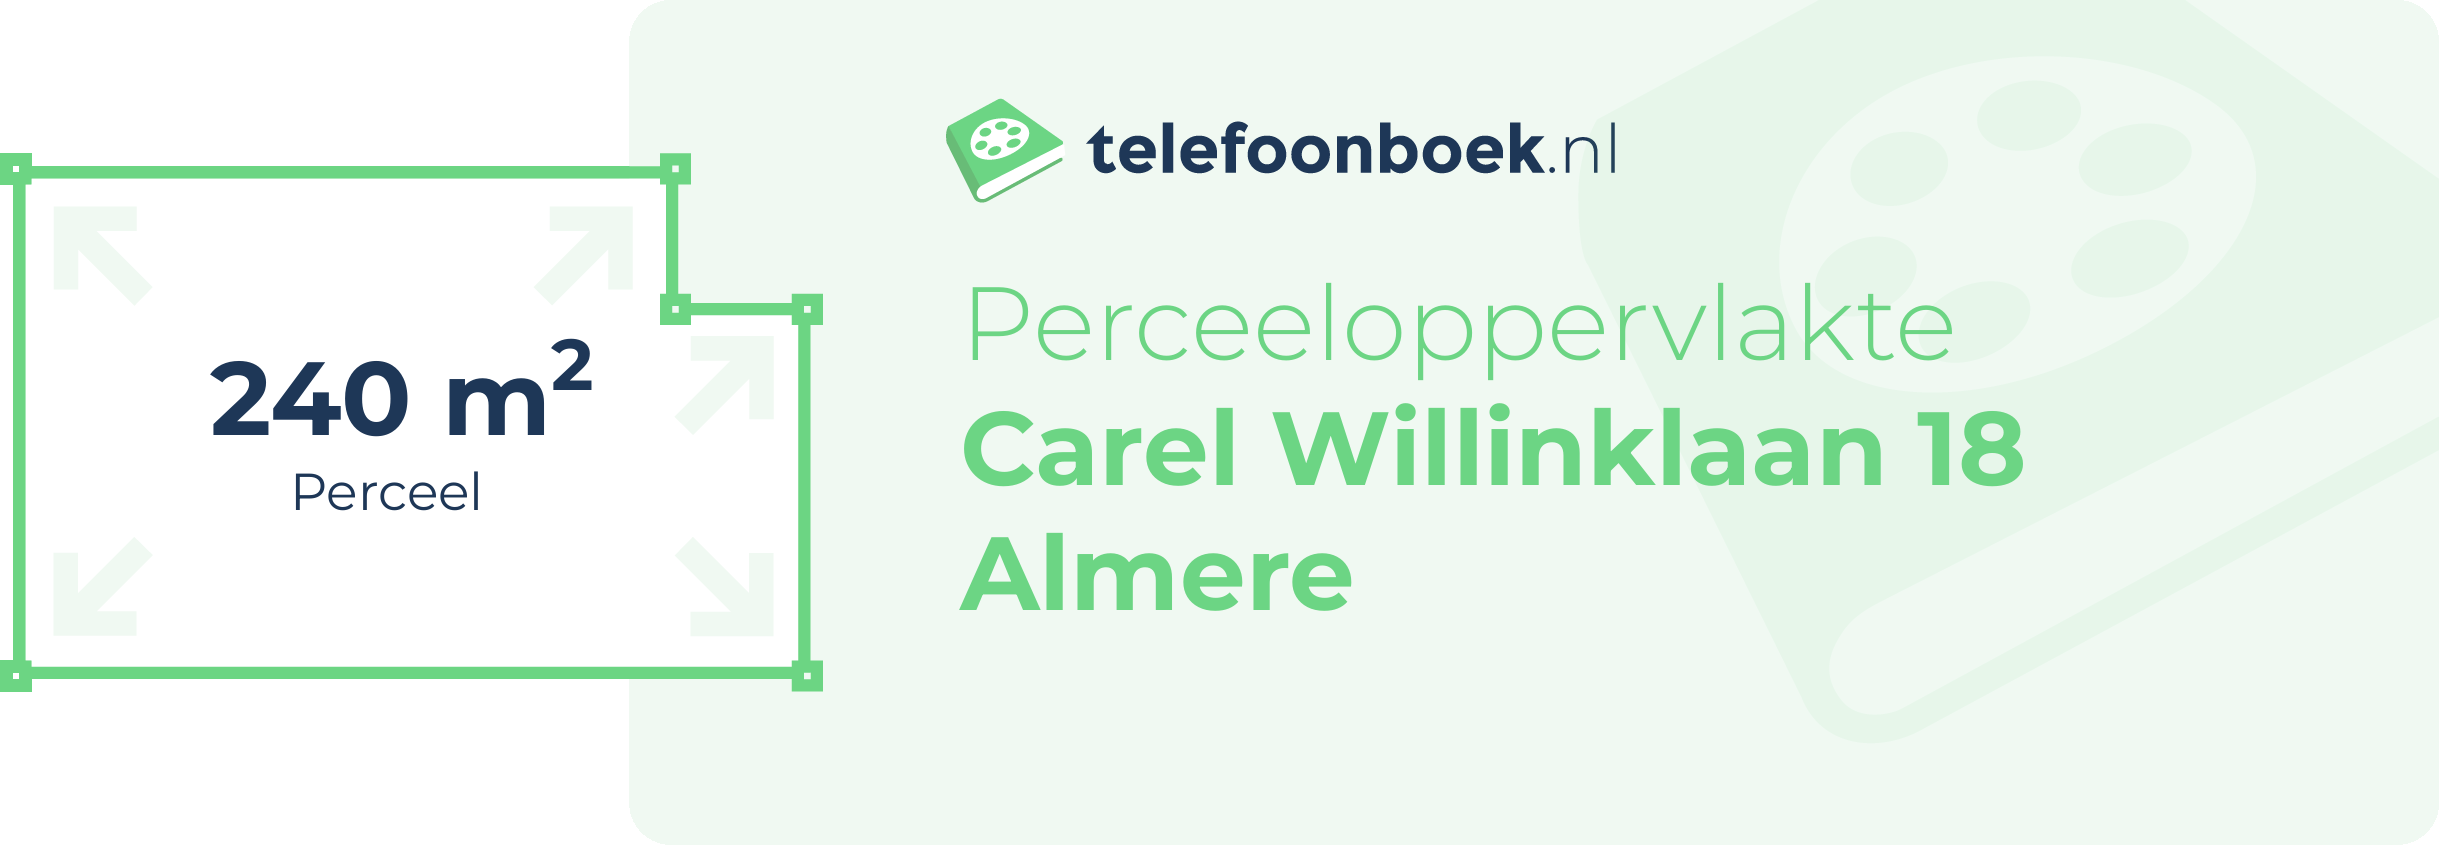 Perceeloppervlakte Carel Willinklaan 18 Almere